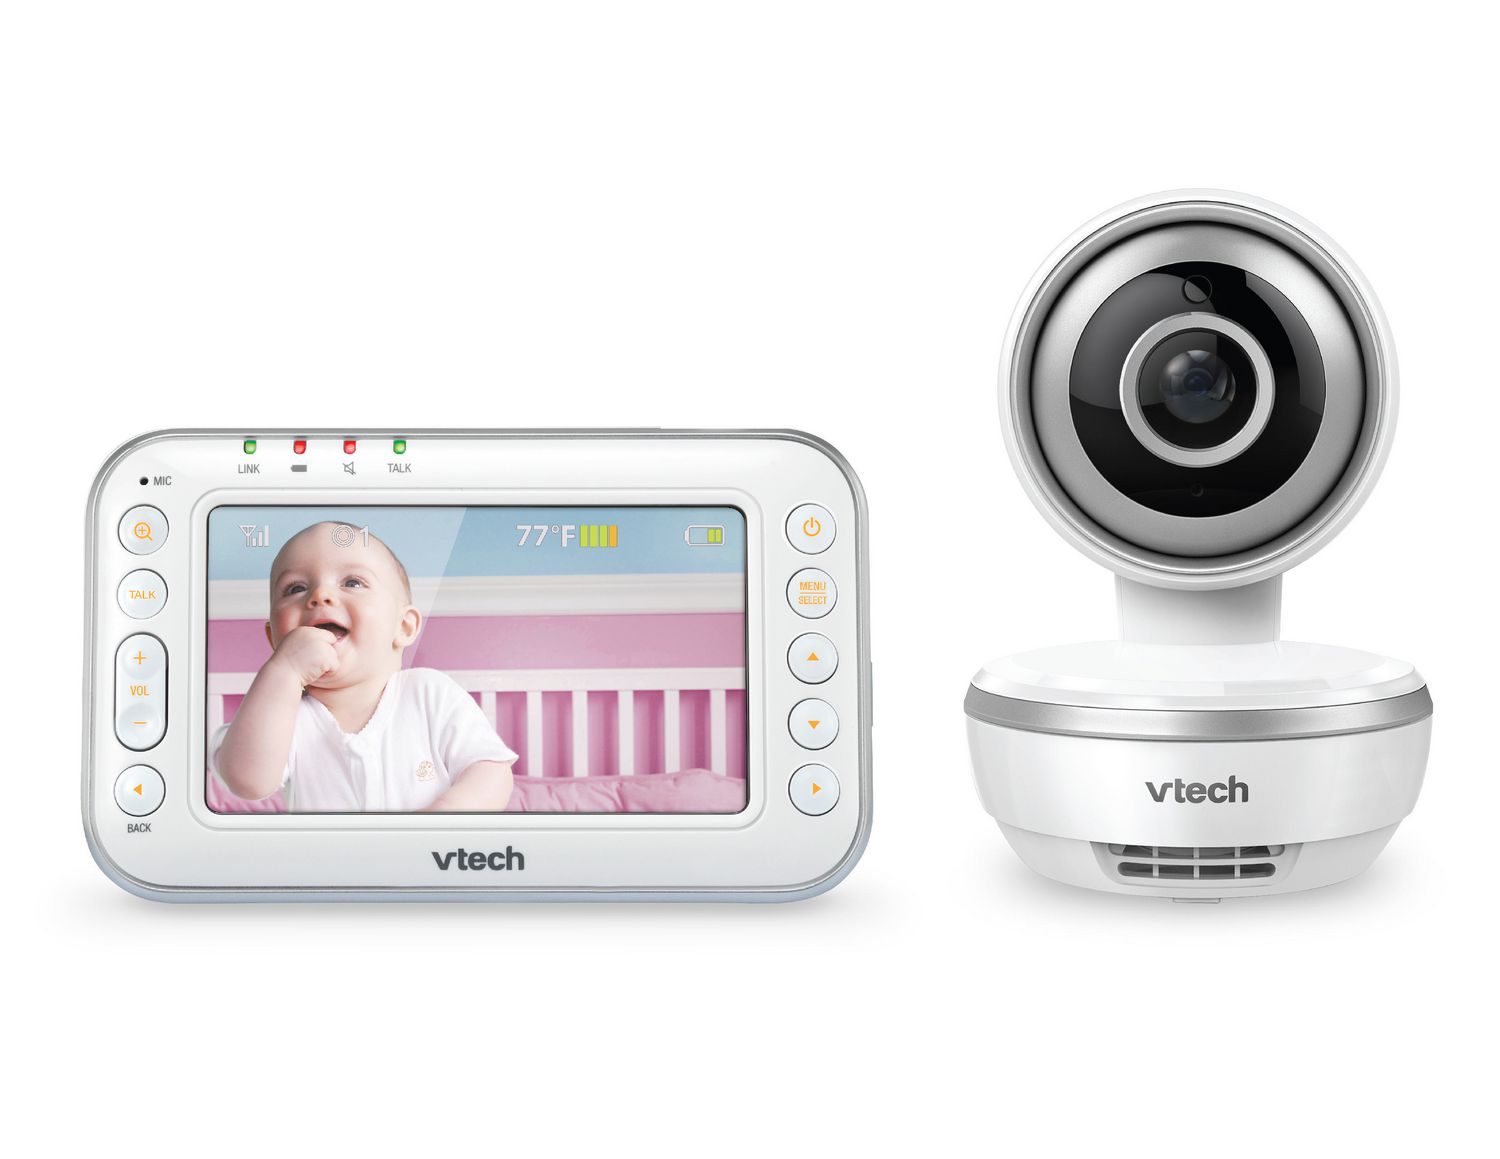 Vtech VM4261 4.3" Digital Video Baby Monitor with Pan & Tilt Camera